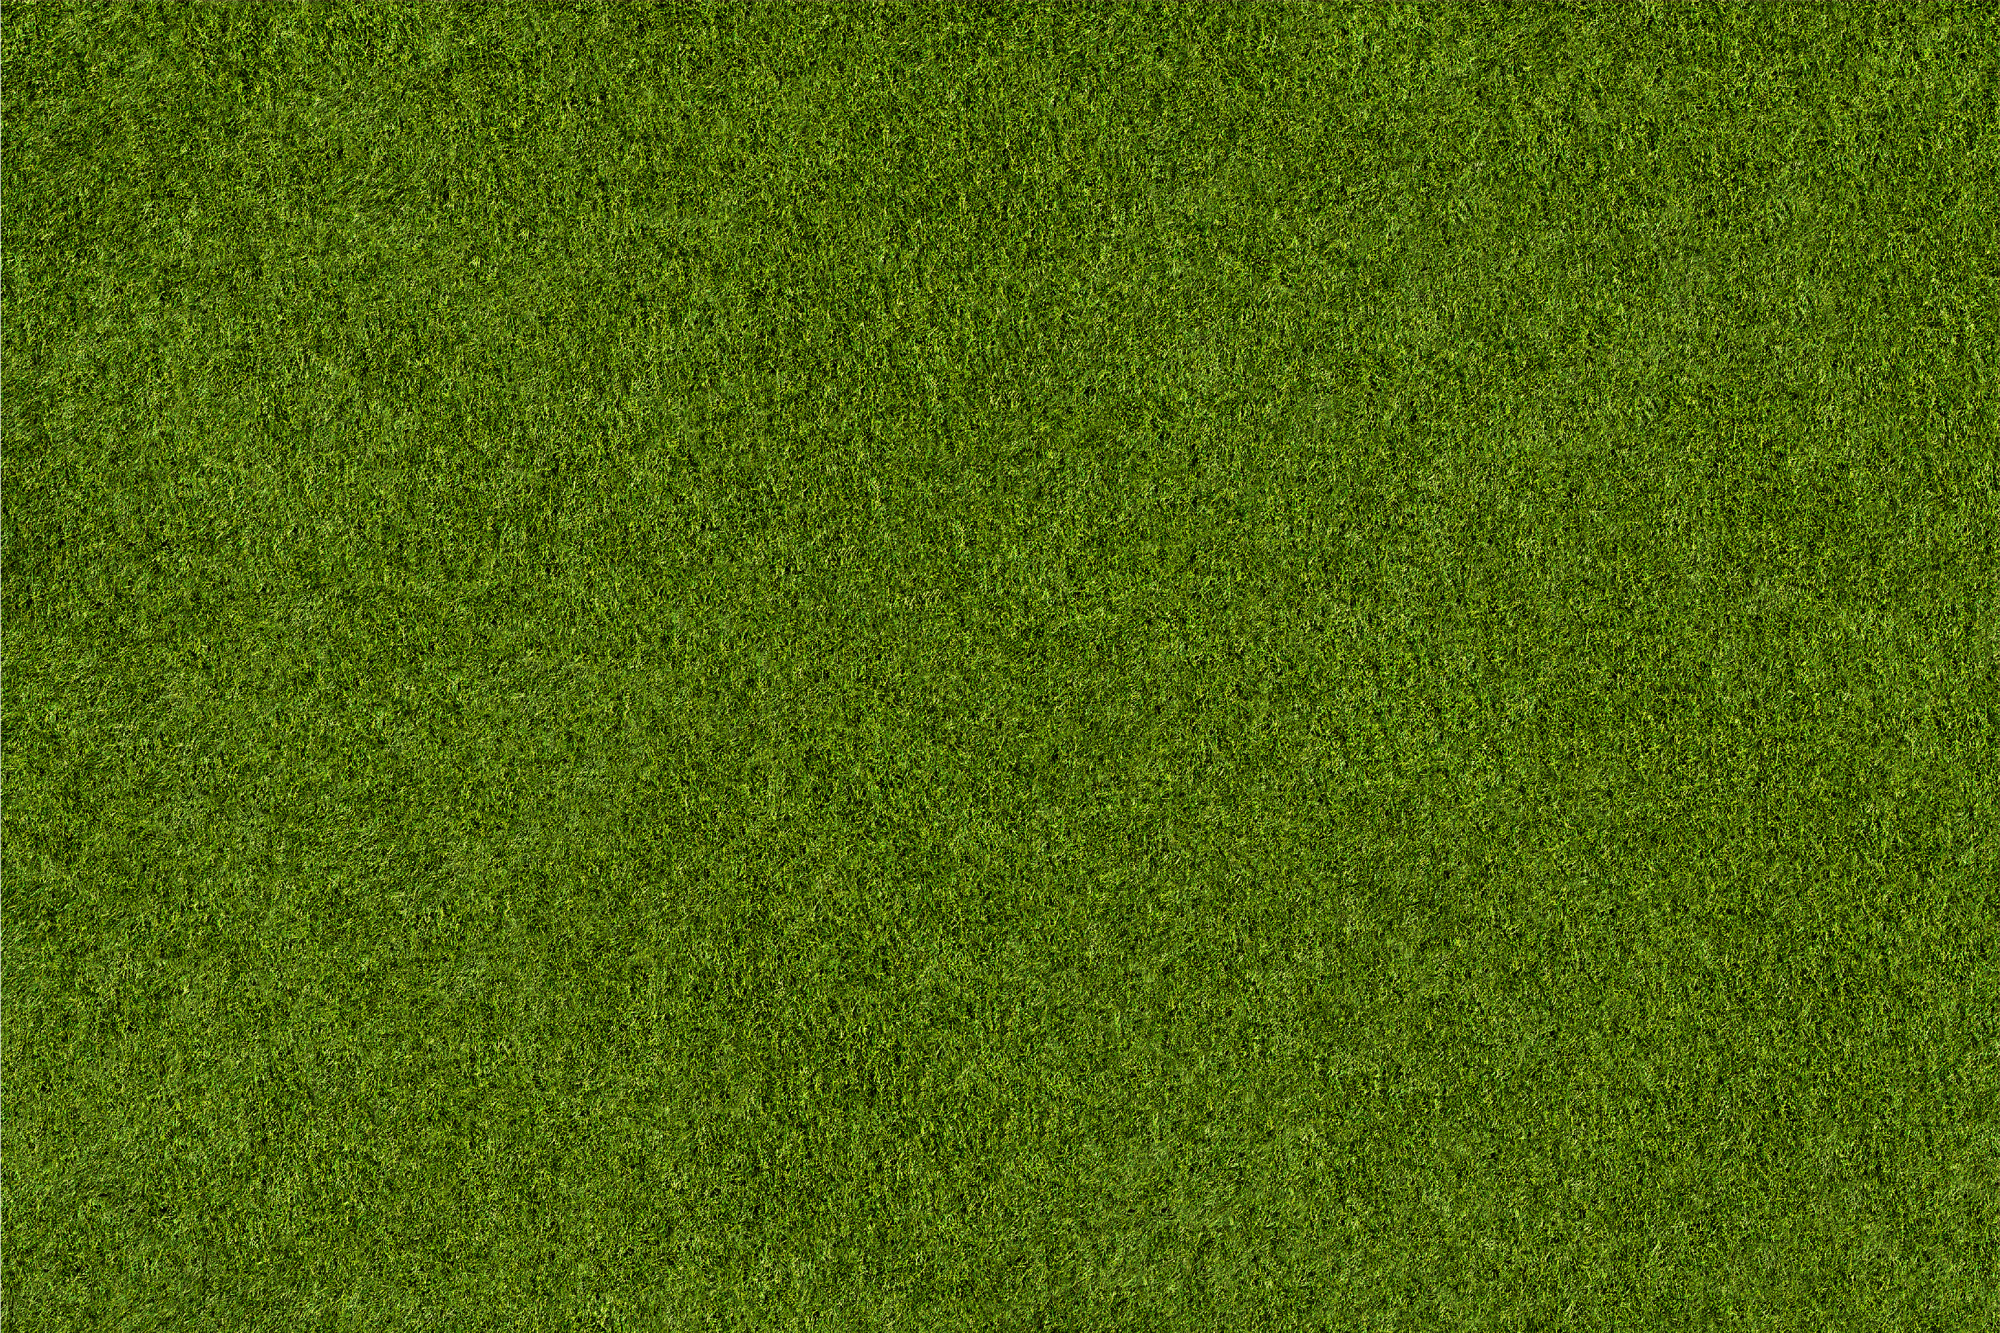 golf 2021 Grass Background - Greener-1